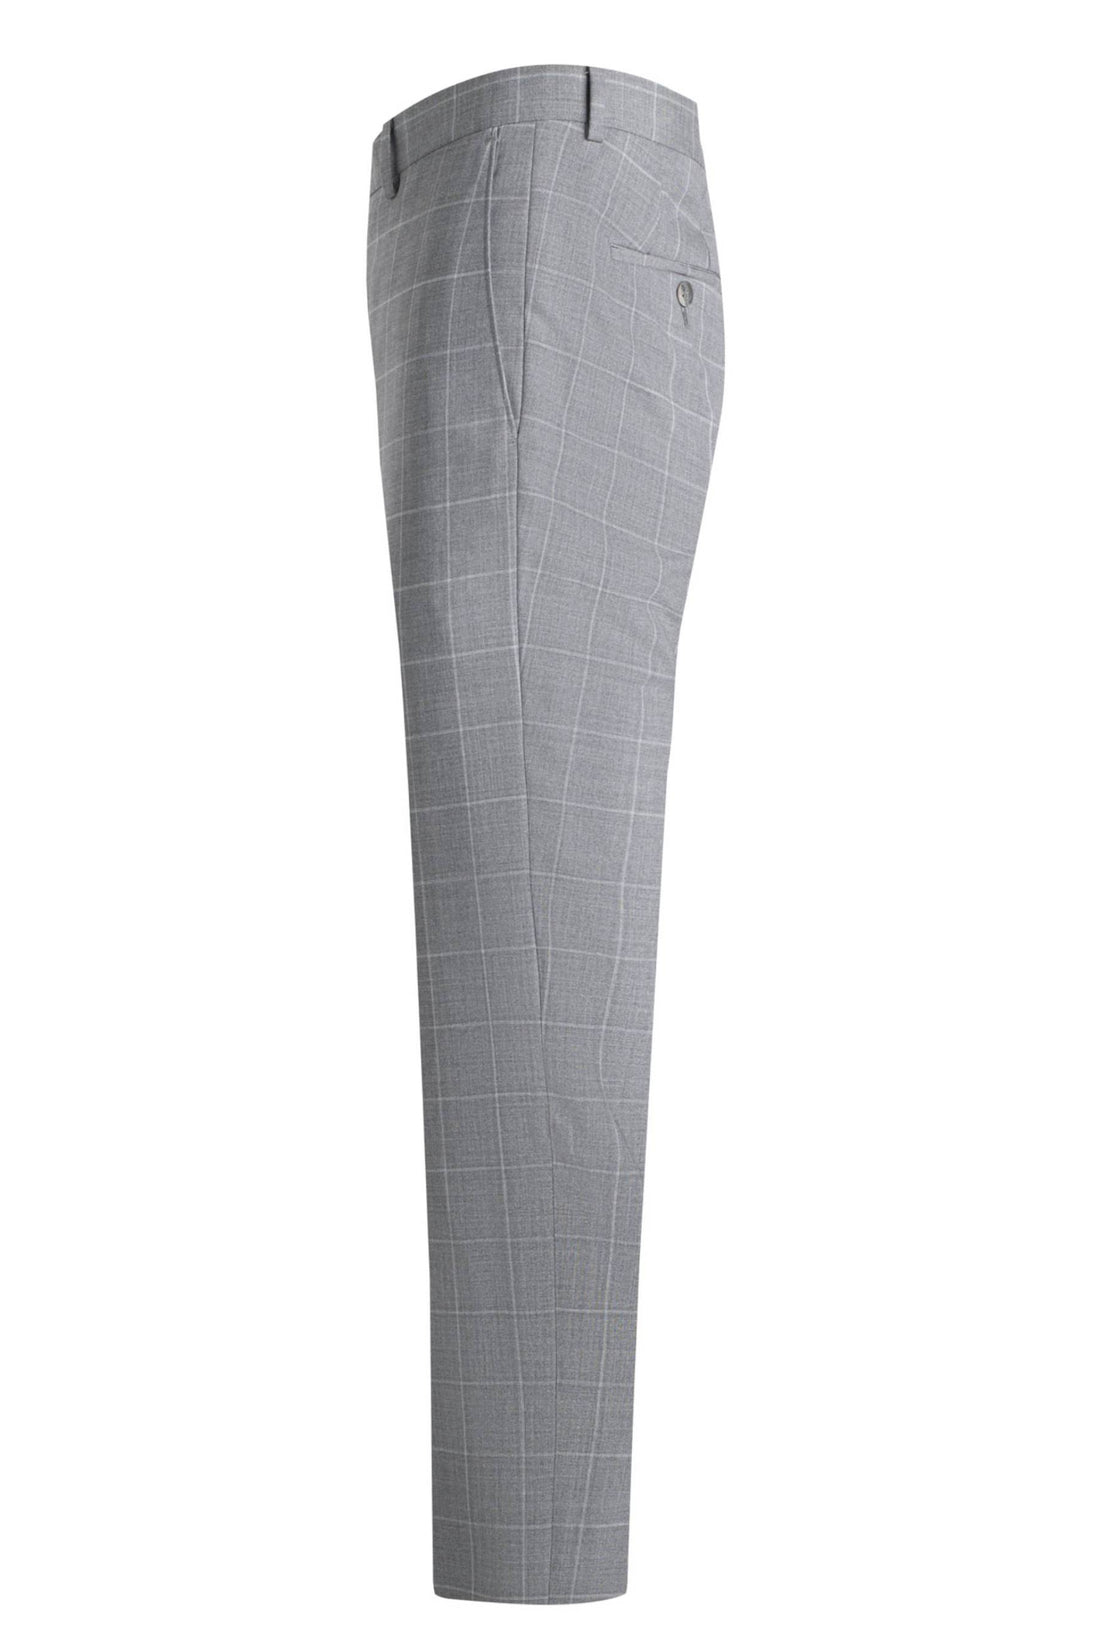 Samuelsohn Grey Windowpane Earth Care Loop Wool Suit Side Pant